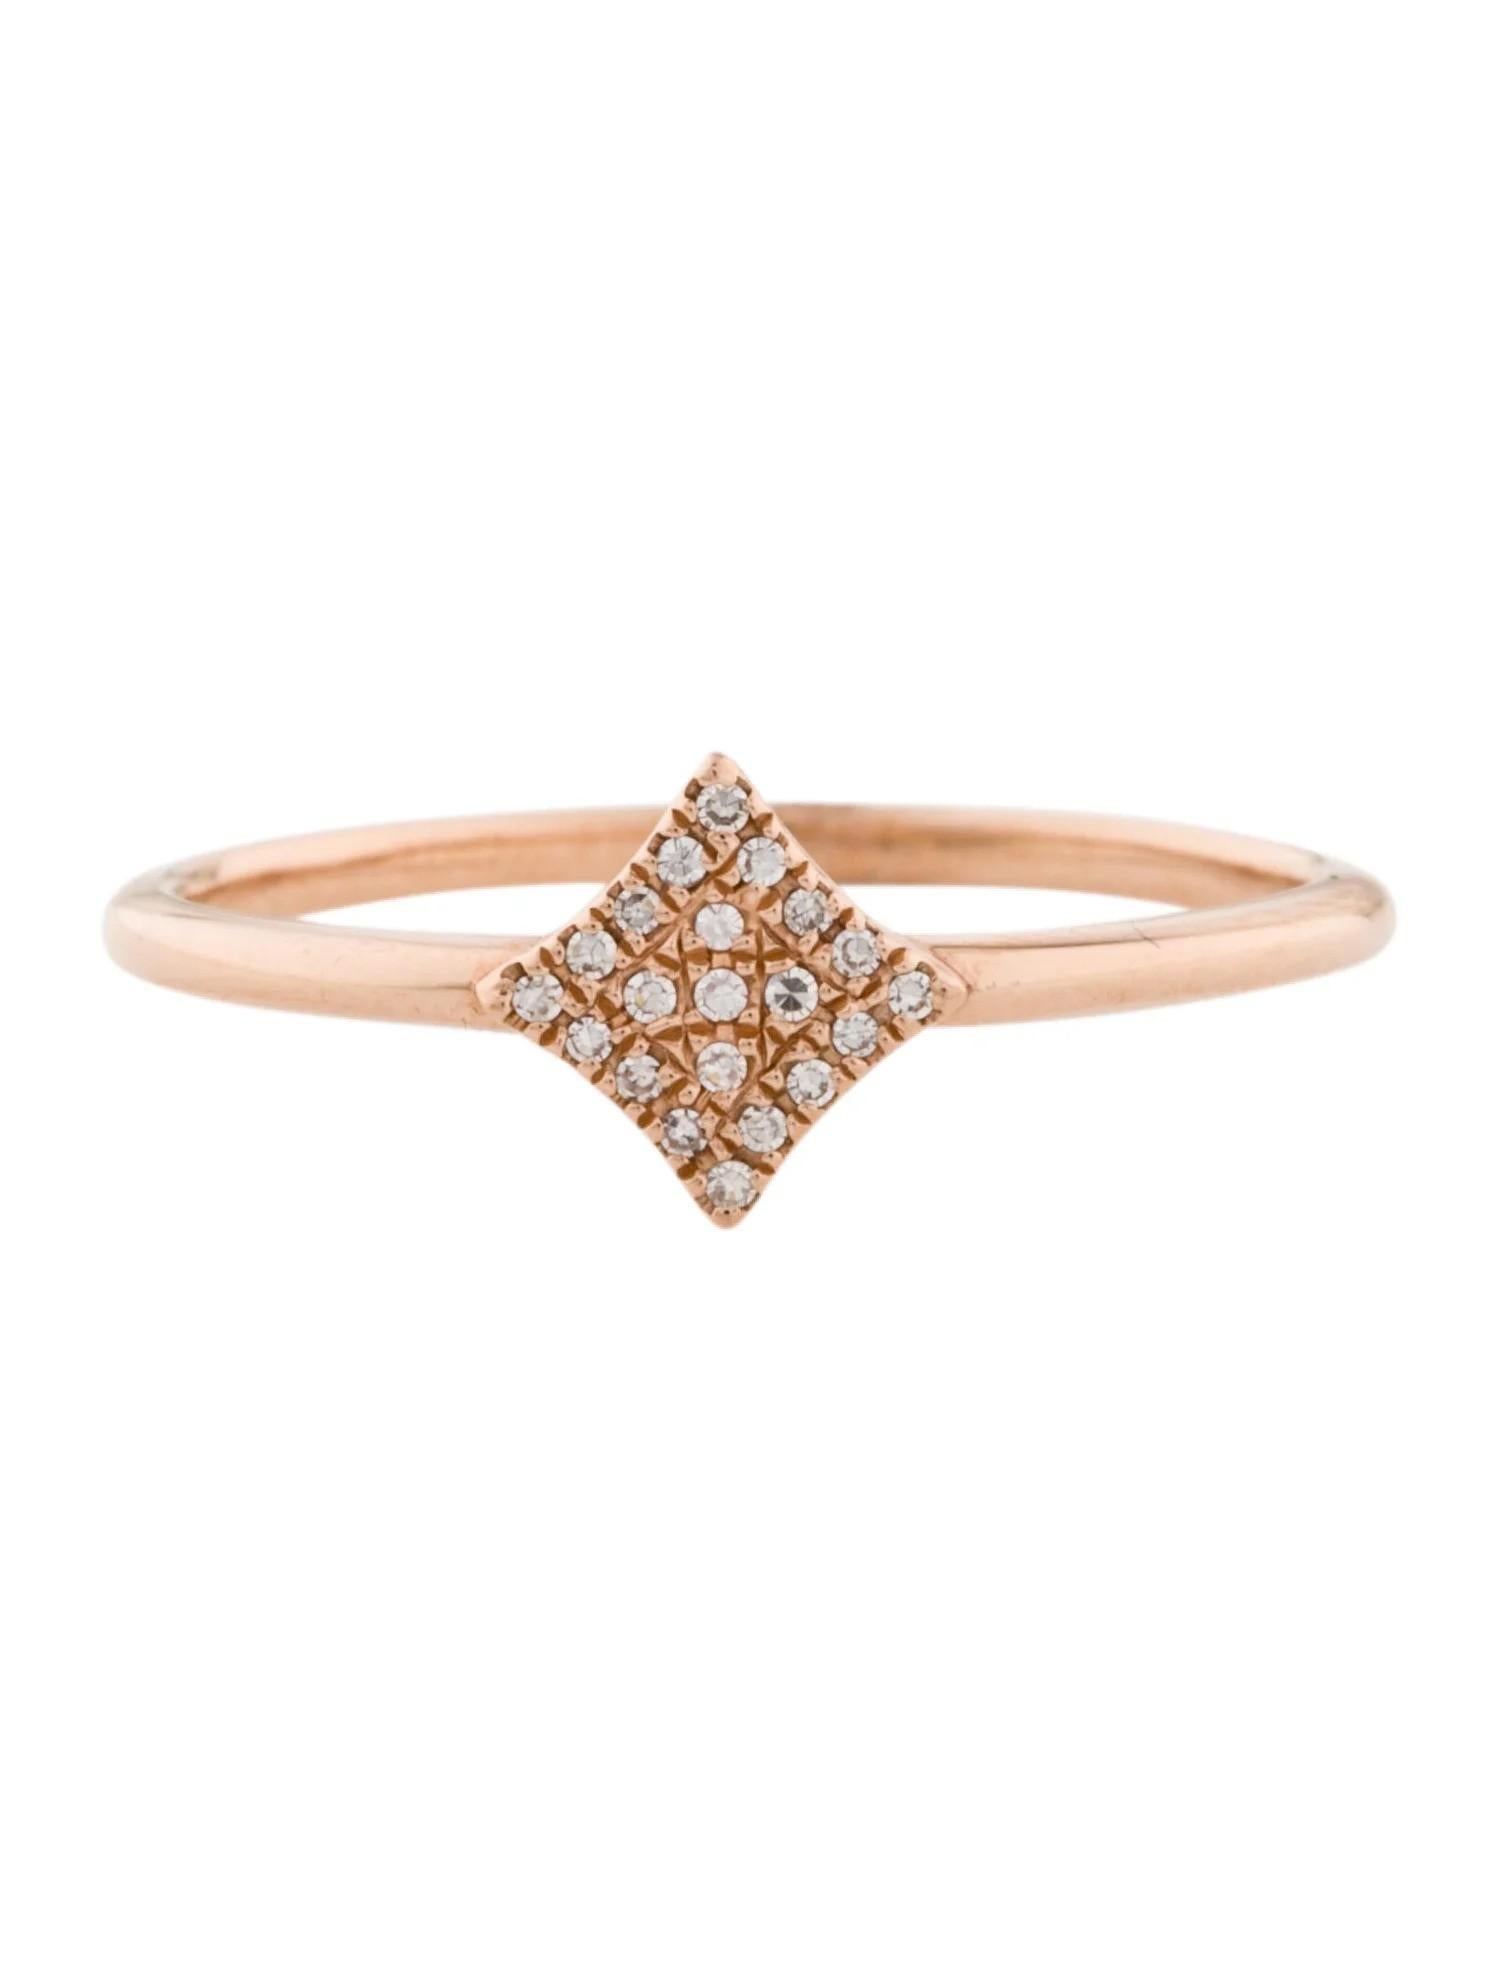 Cette bague en diamant est un accessoire étonnant et intemporel qui peut ajouter une touche de glamour et de sophistication à n'importe quelle tenue. Ce magnifique bijou est orné de diamants éblouissants qui brillent et captent la lumière, ce qui en